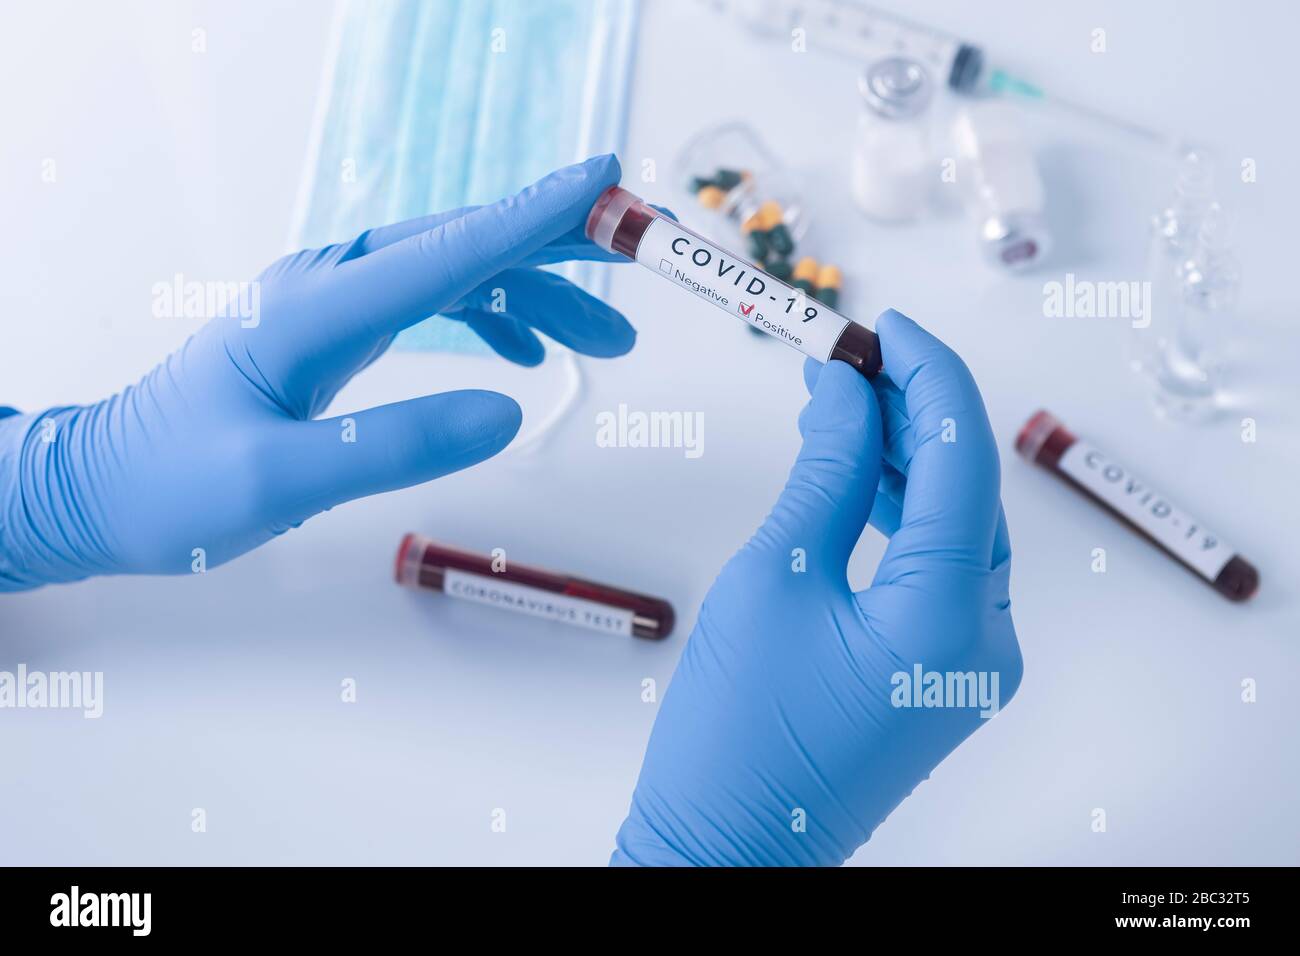 Manos de analistas con guantes protectores sosteniendo la sangre de la prueba del coronavirus COVID 19. Prueba de virus y concepto de investigación Foto de stock